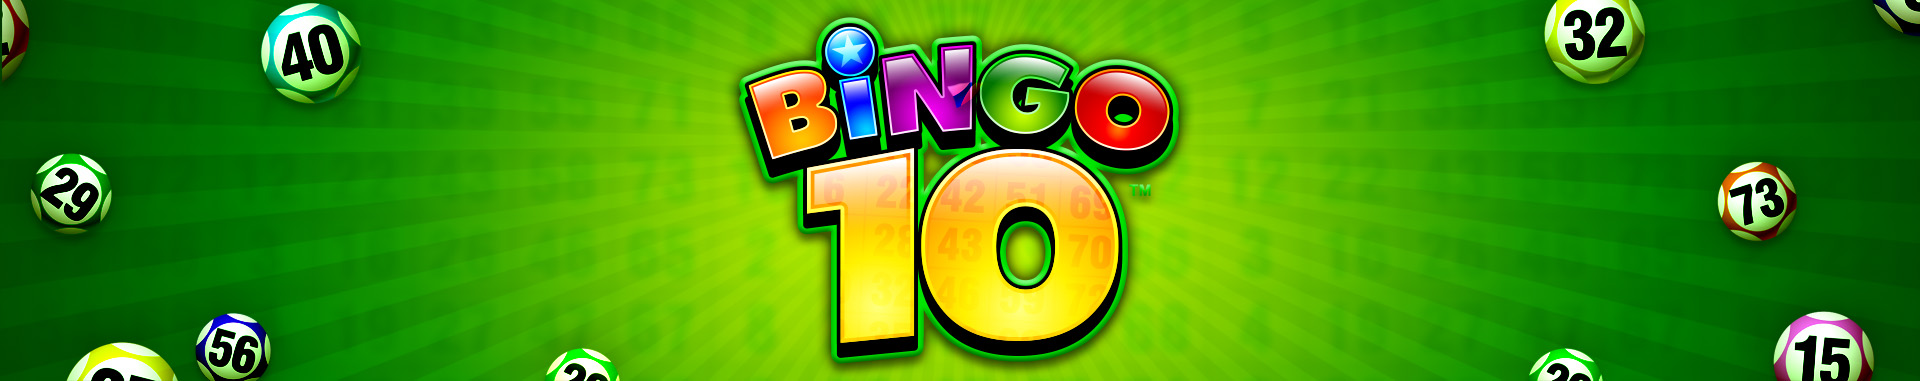 Bingo 10